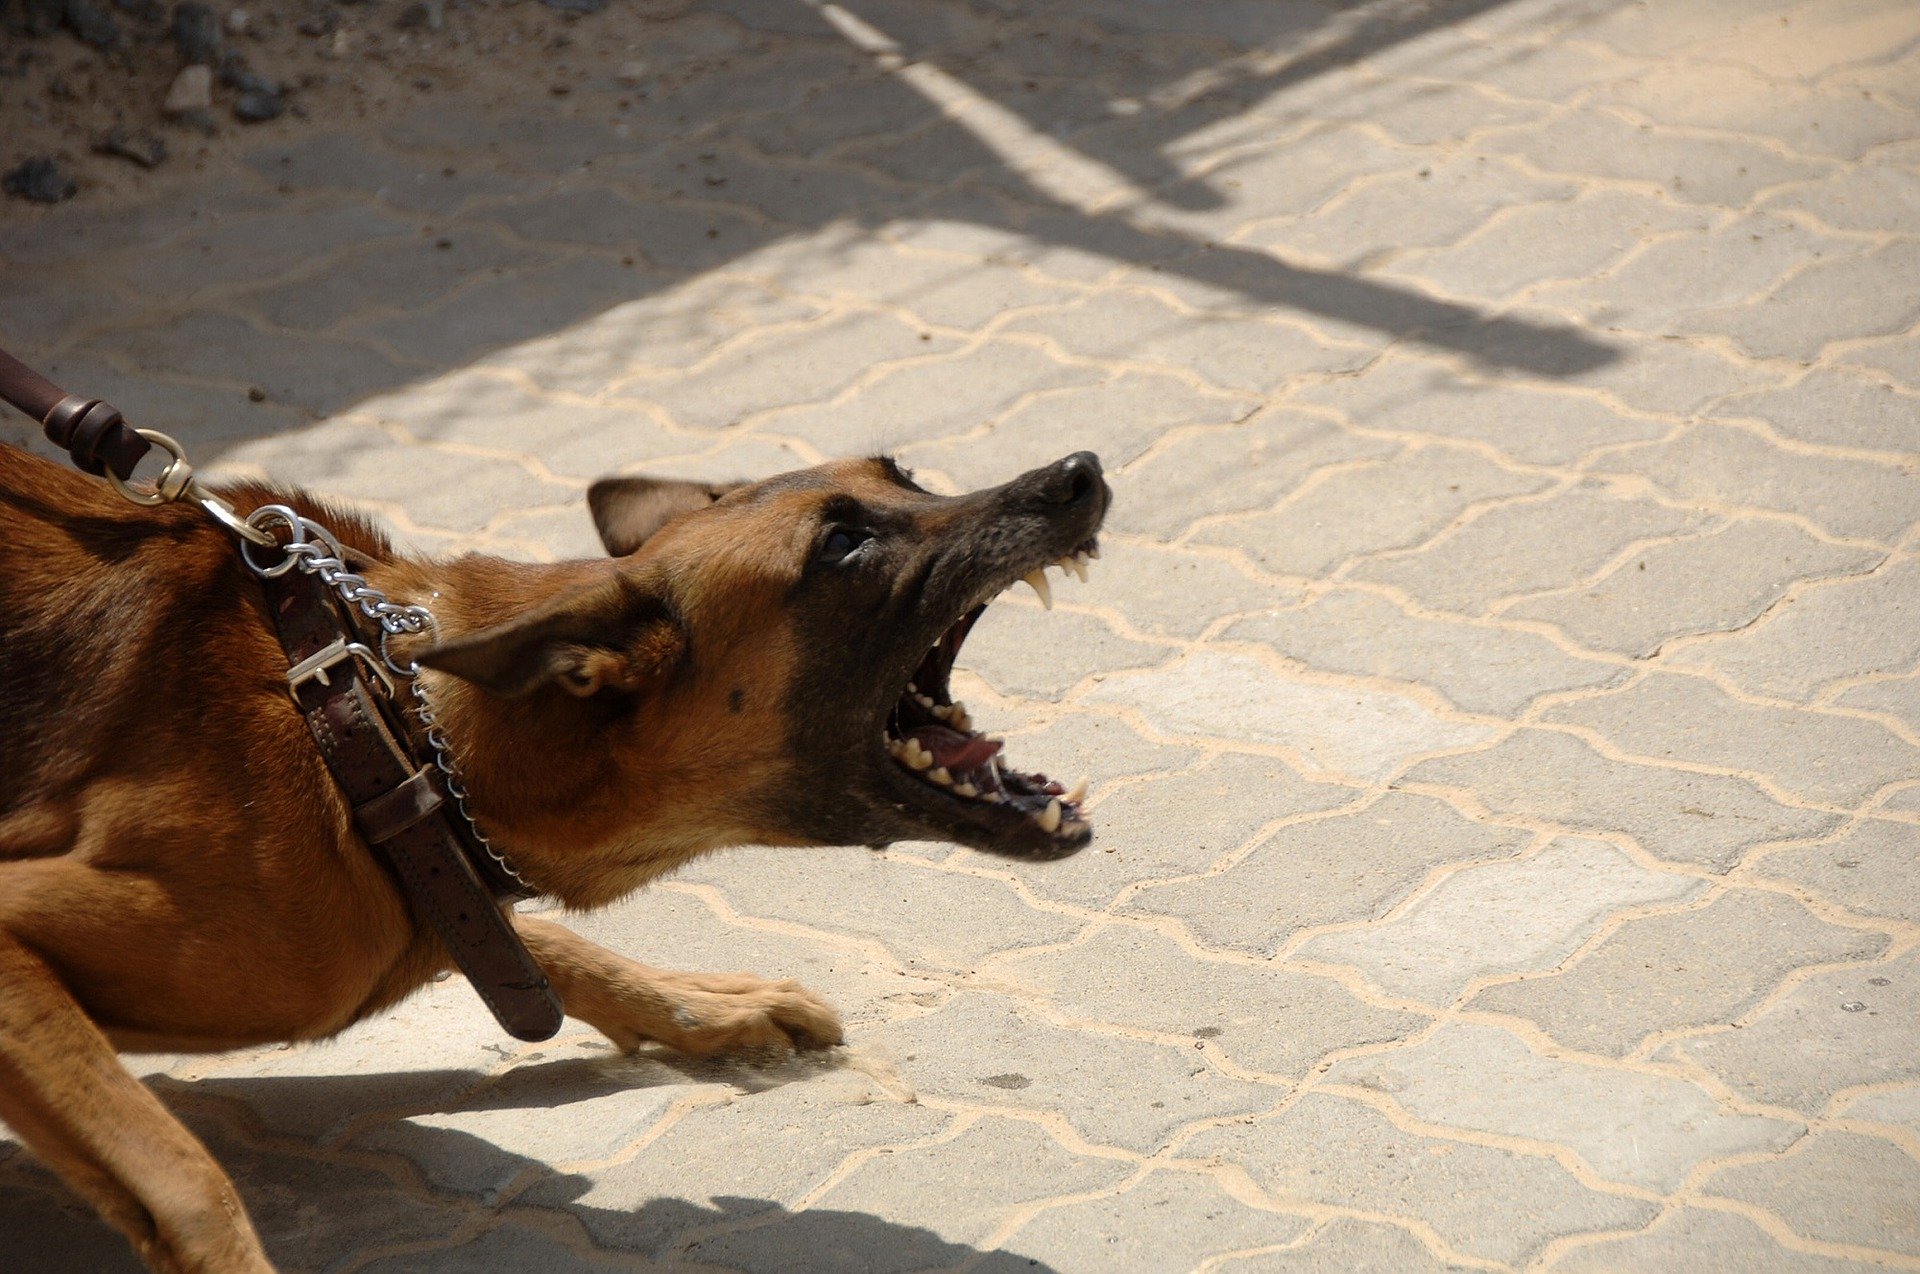 dog agression training illawarra